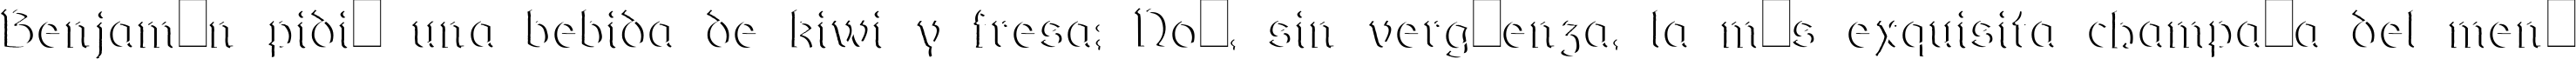 Пример написания шрифтом DundalkEmbossed текста на испанском